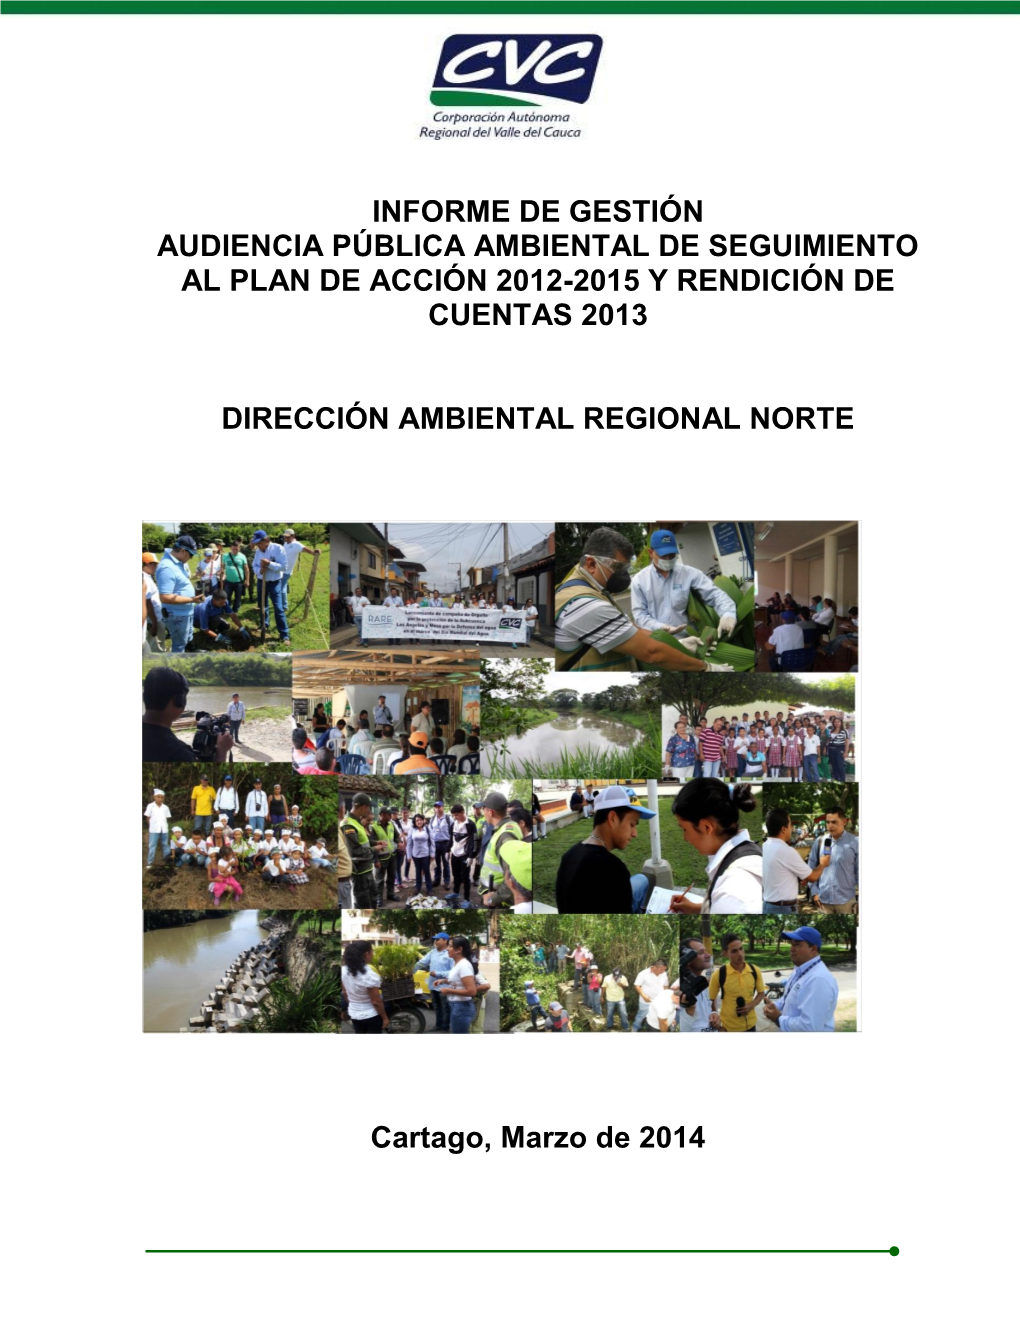 Informe De Gestión Audiencia Pública Ambiental De Seguimiento Al Plan De Acción 2012-2015 Y Rendición De Cuentas 2013